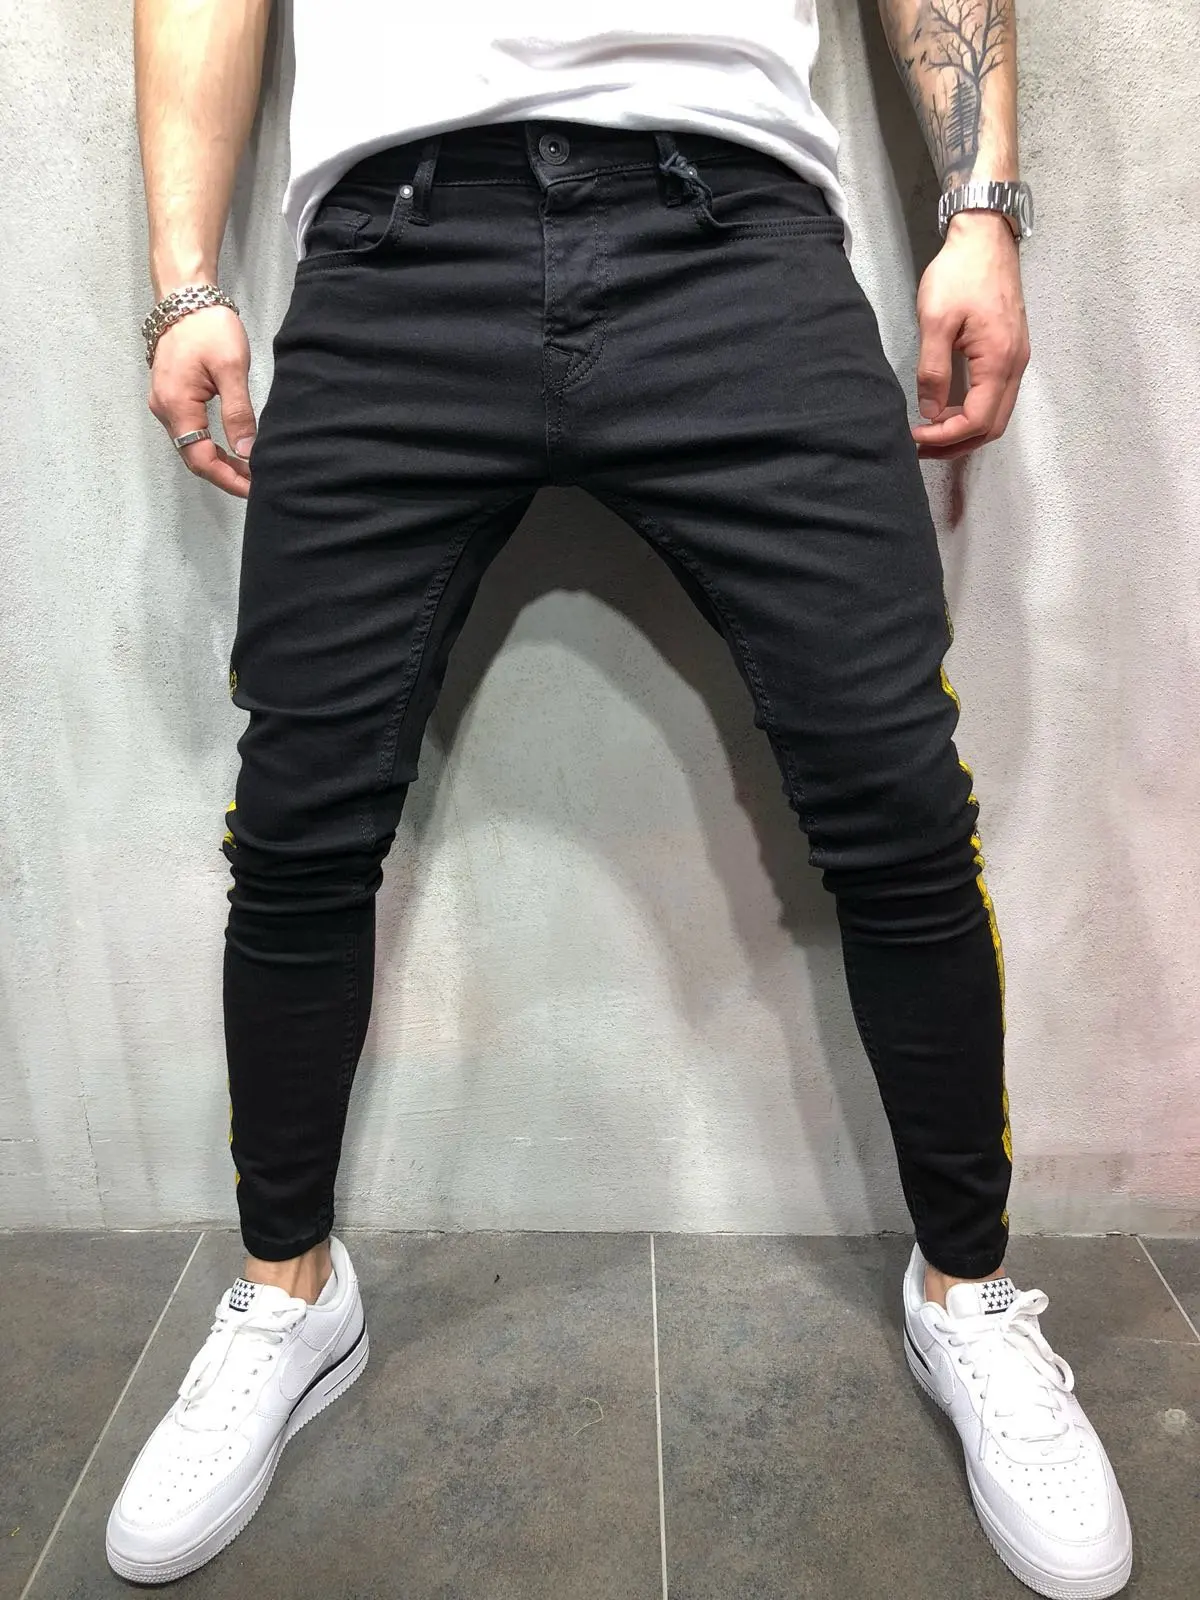 Узкие джинсовые брюки карандаш для мужчин хип хоп мода весна осень 2019 мужские - Фото №1